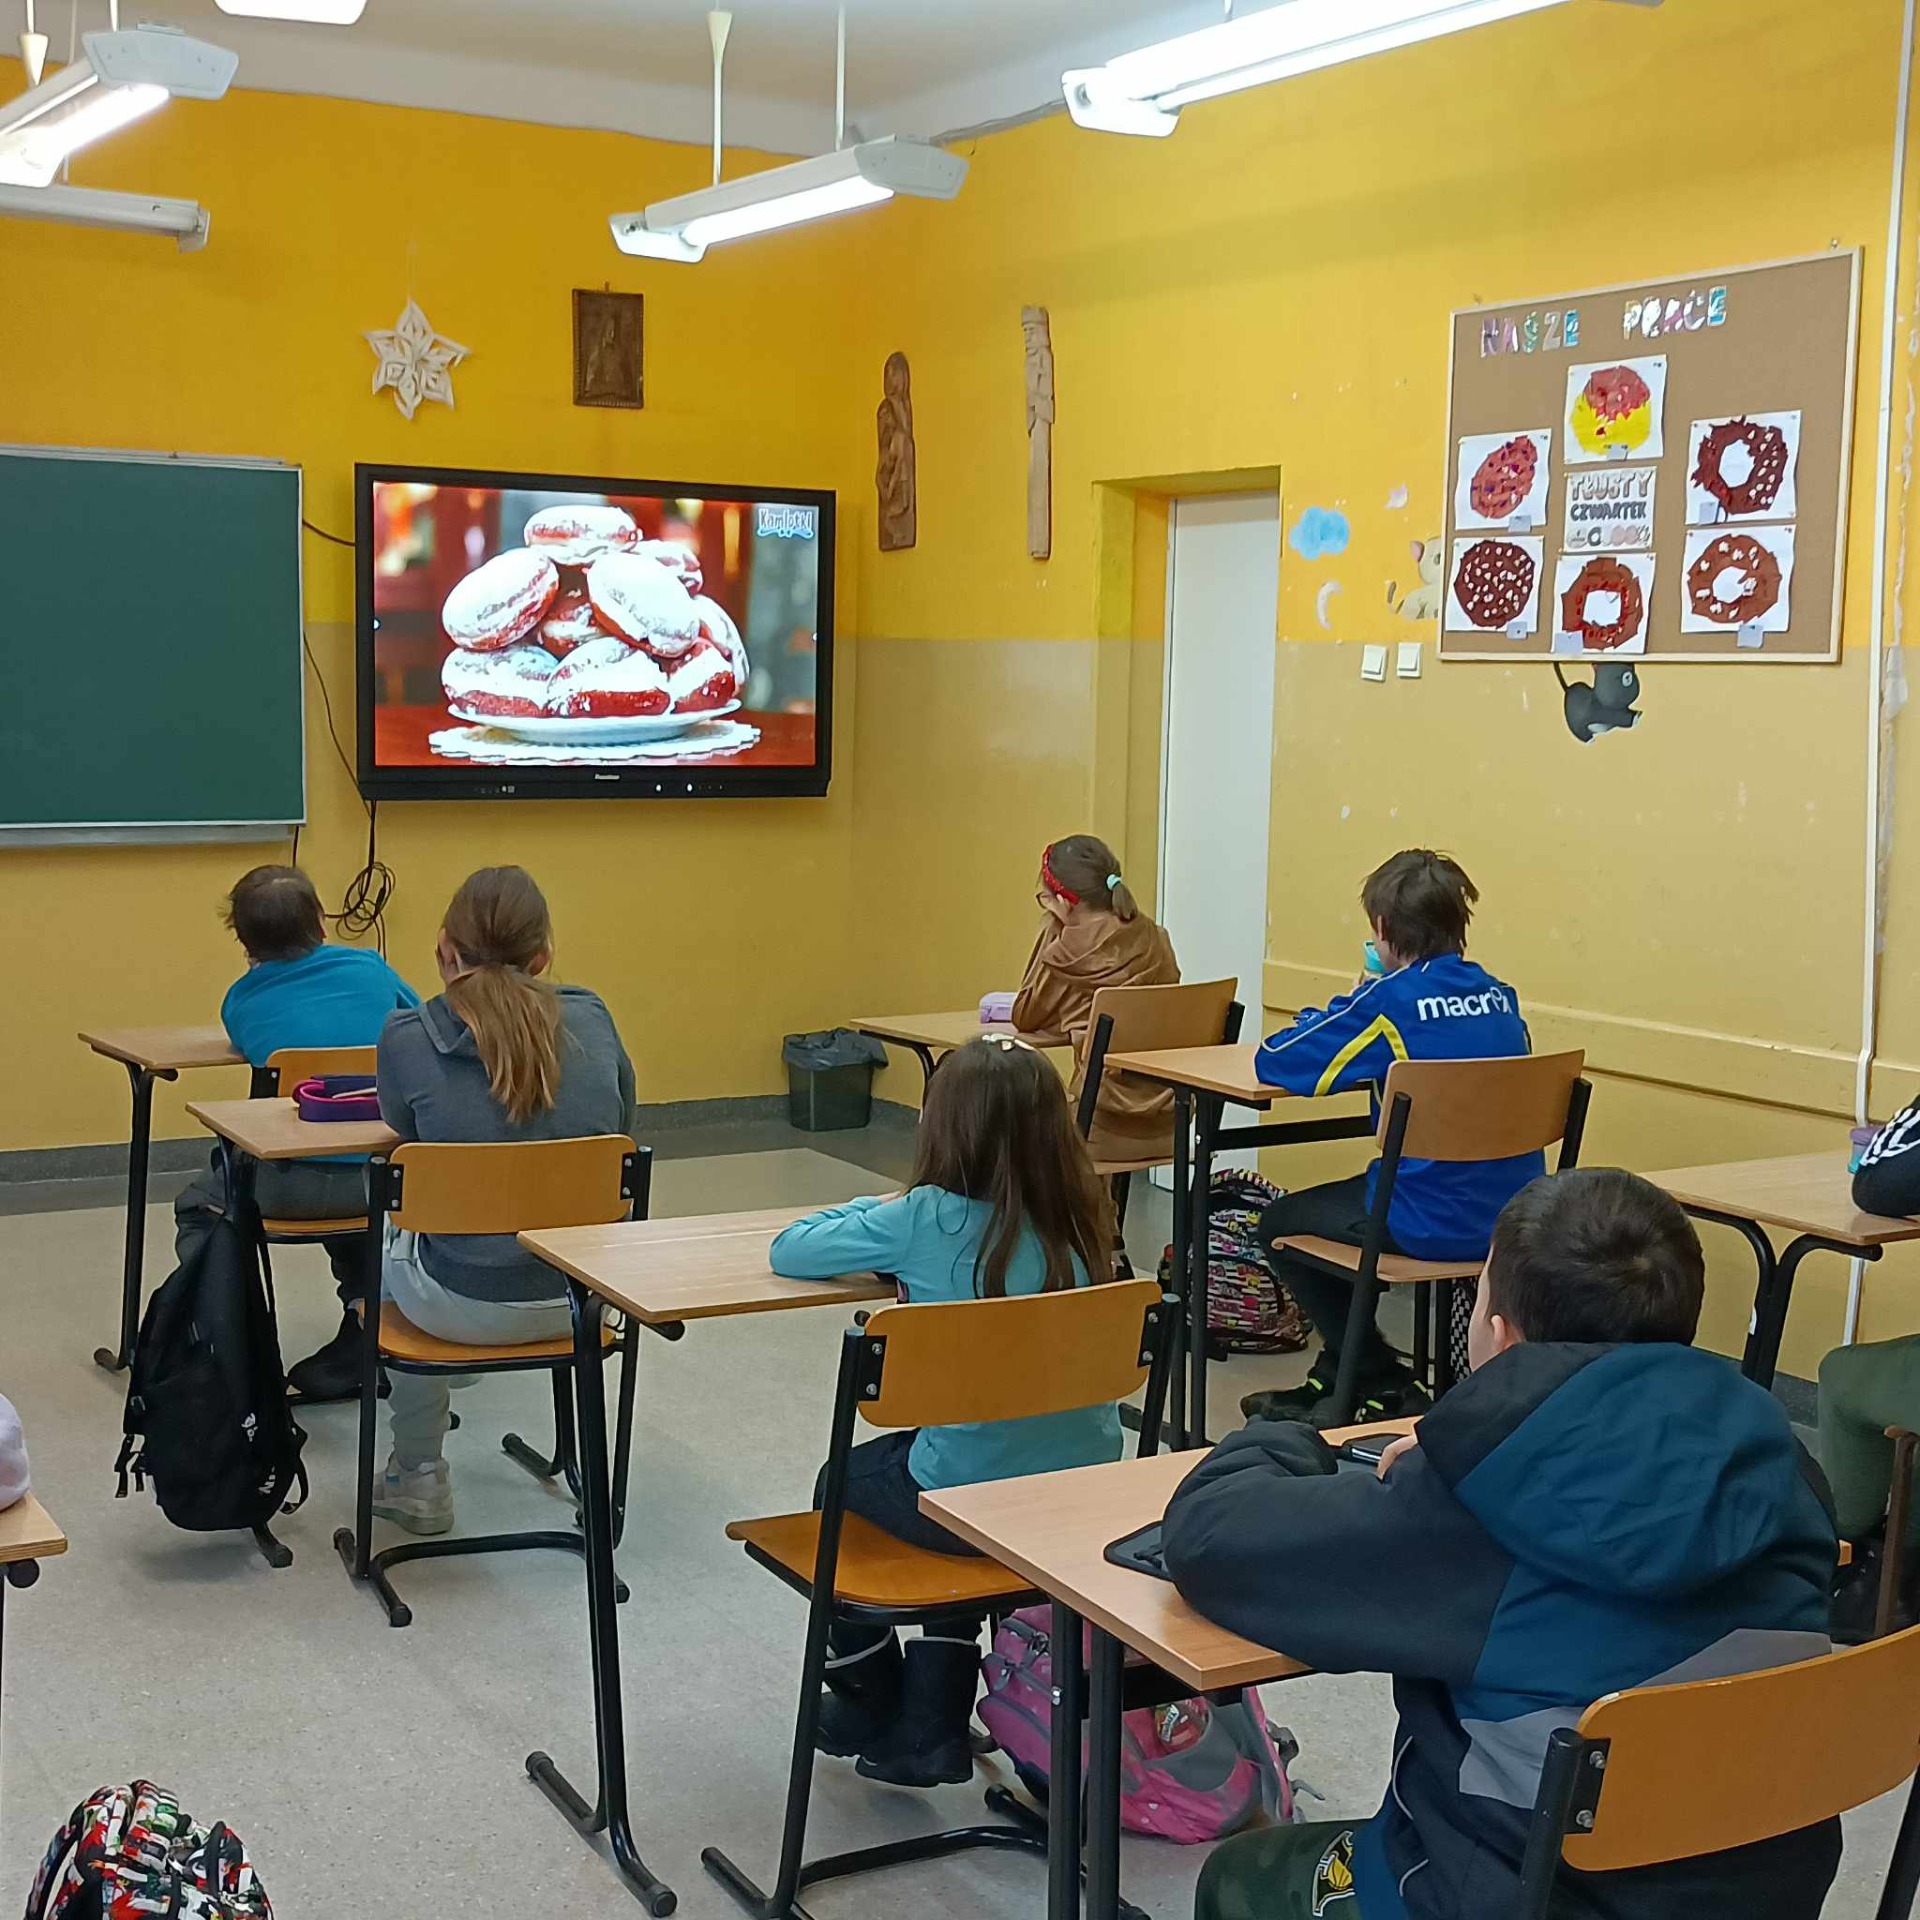 Uczniowie oglądają film edukacyjny dotyczący historii tłustego czwartku